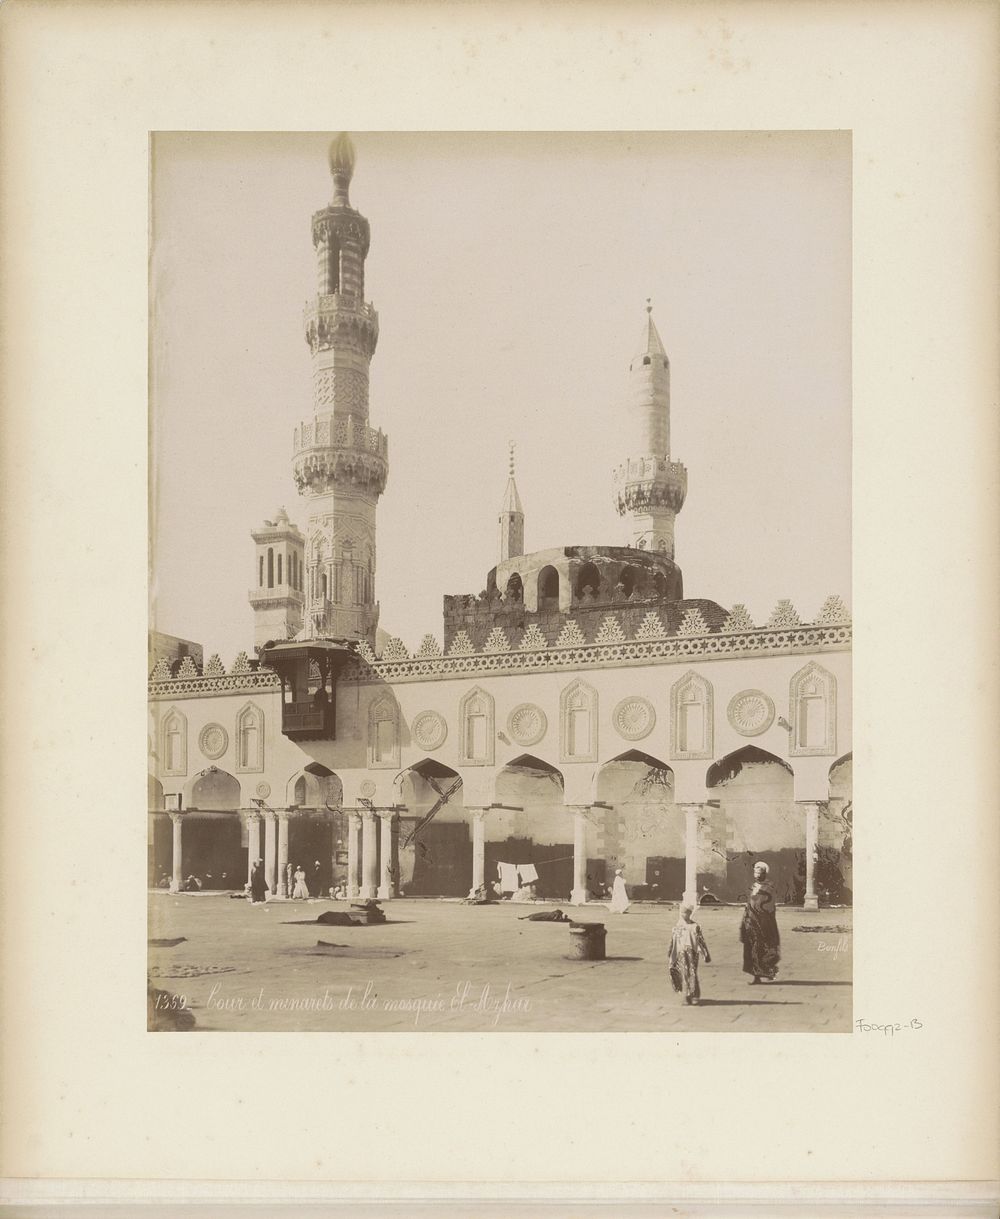 Binnenplaats en minaretten van de Al-Azhar-moskee in Caïro (c. 1870 - c. 1898) by Maison Bonfils